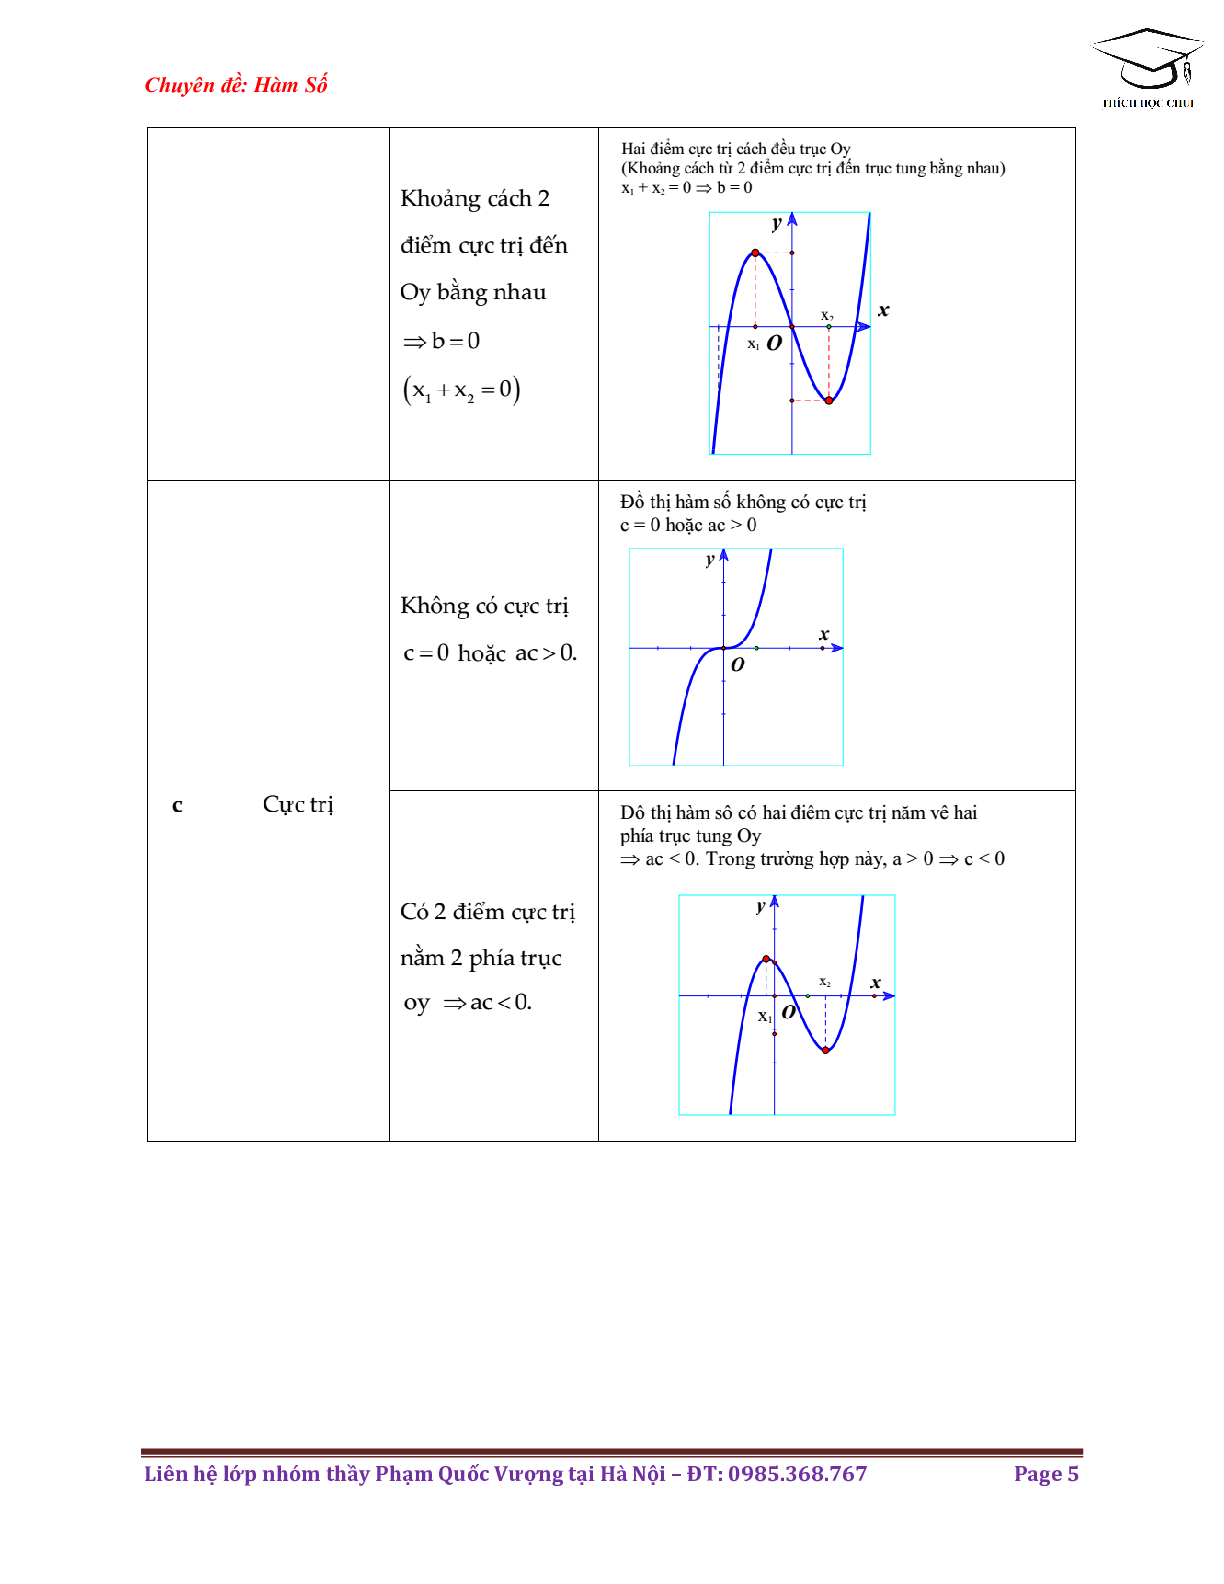 Phương pháp nhận biết dạng đồ thị hàm số môn Toán lớp 12 (trang 5)